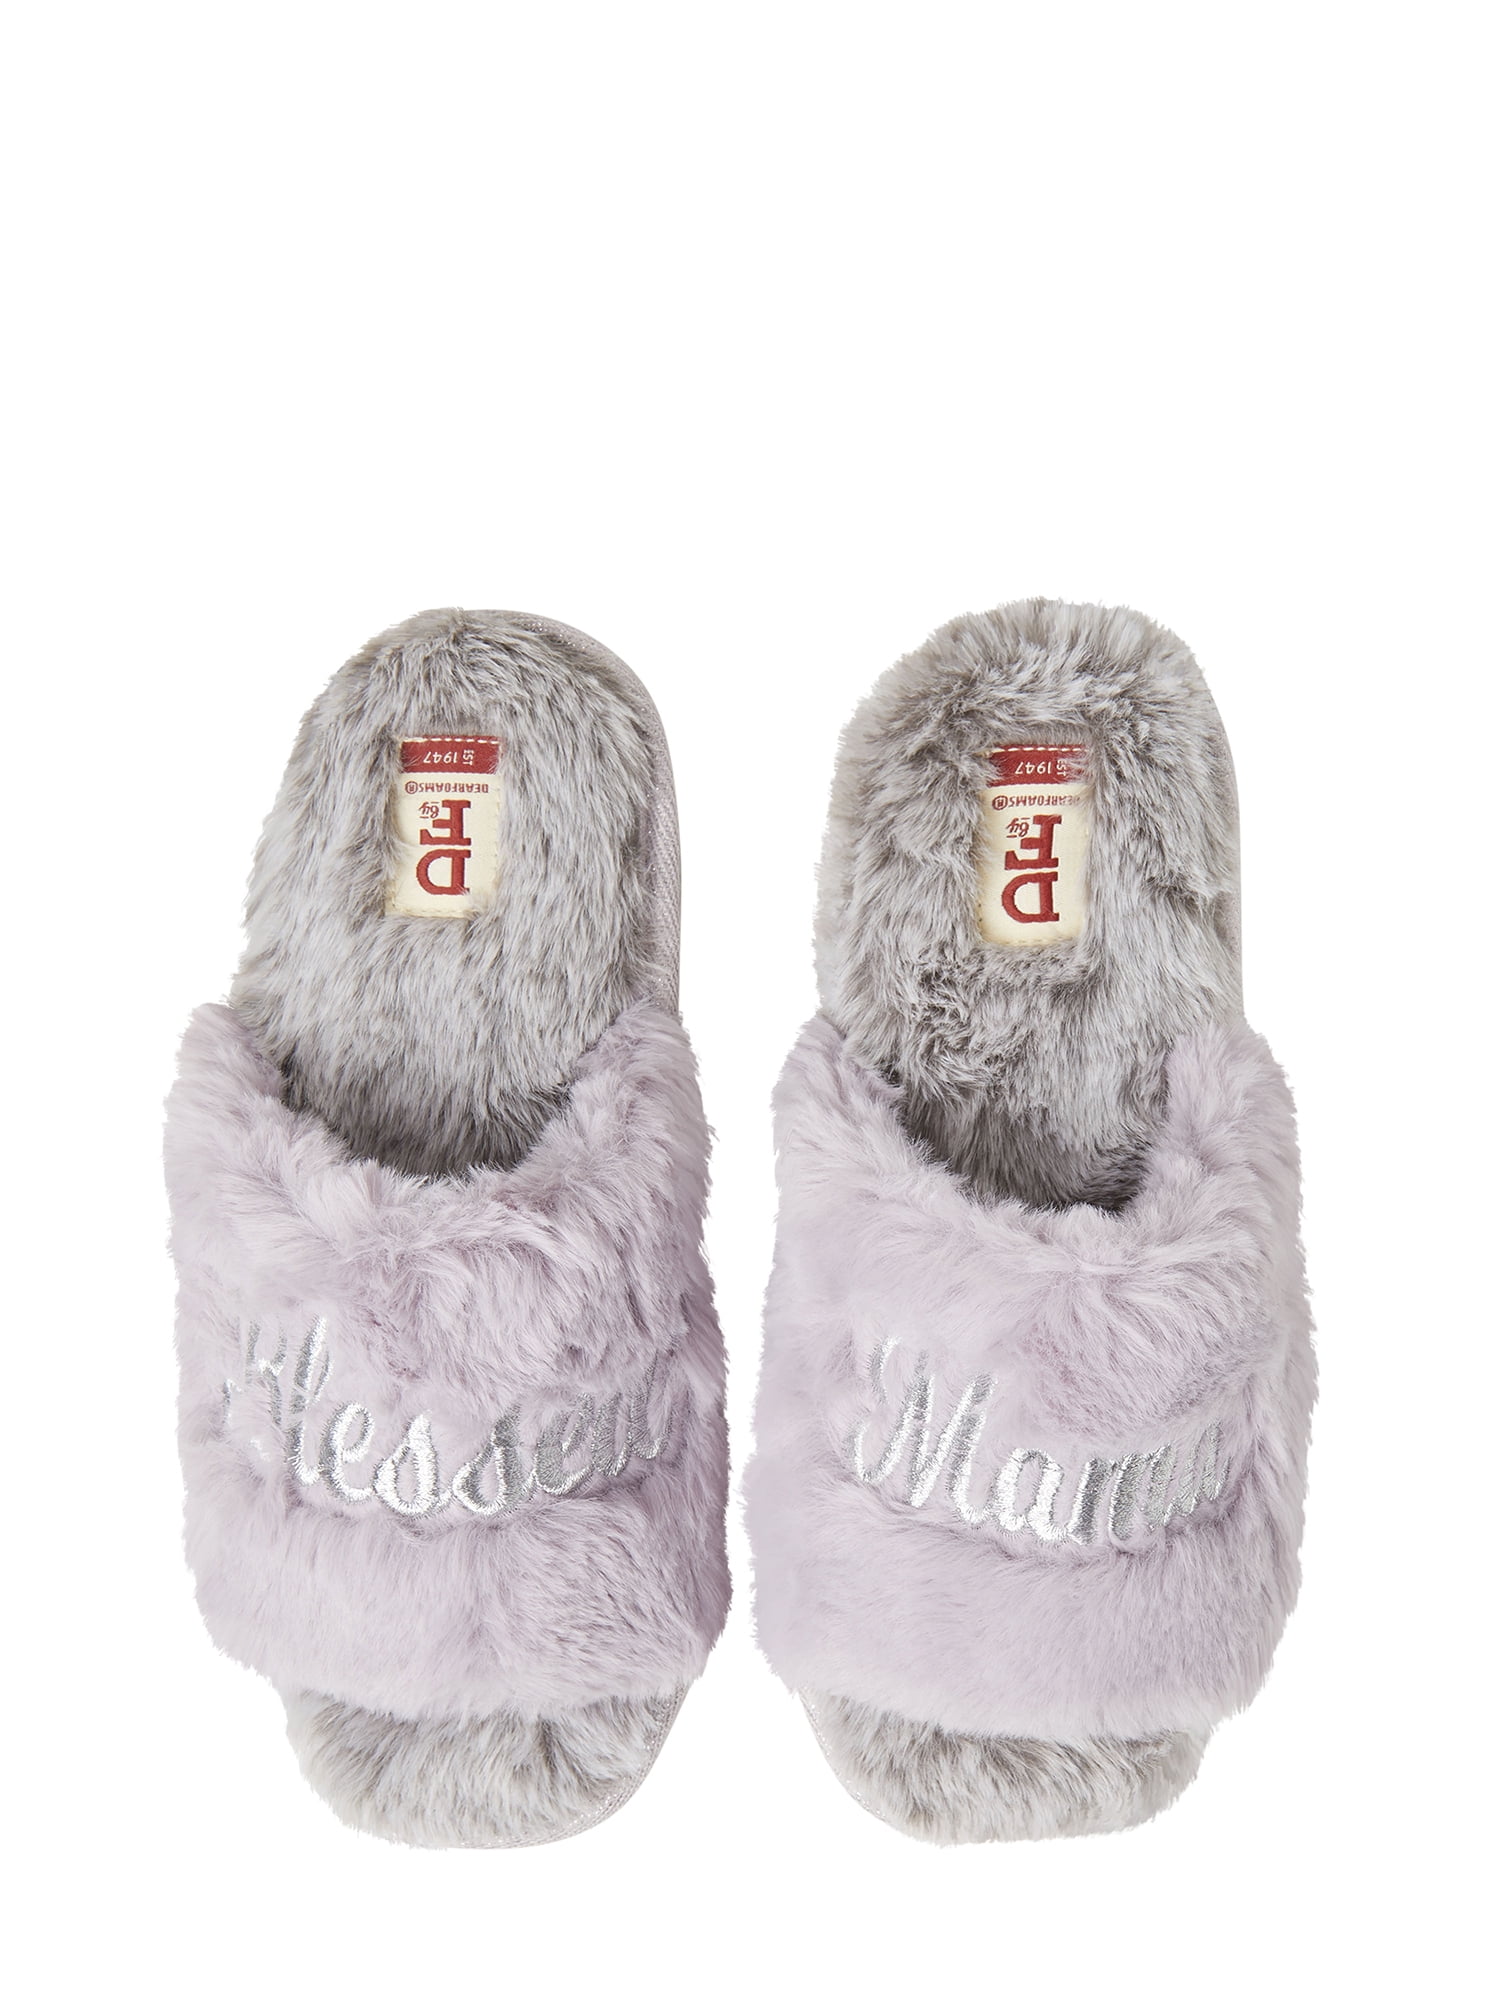 dearfoam novelty slippers